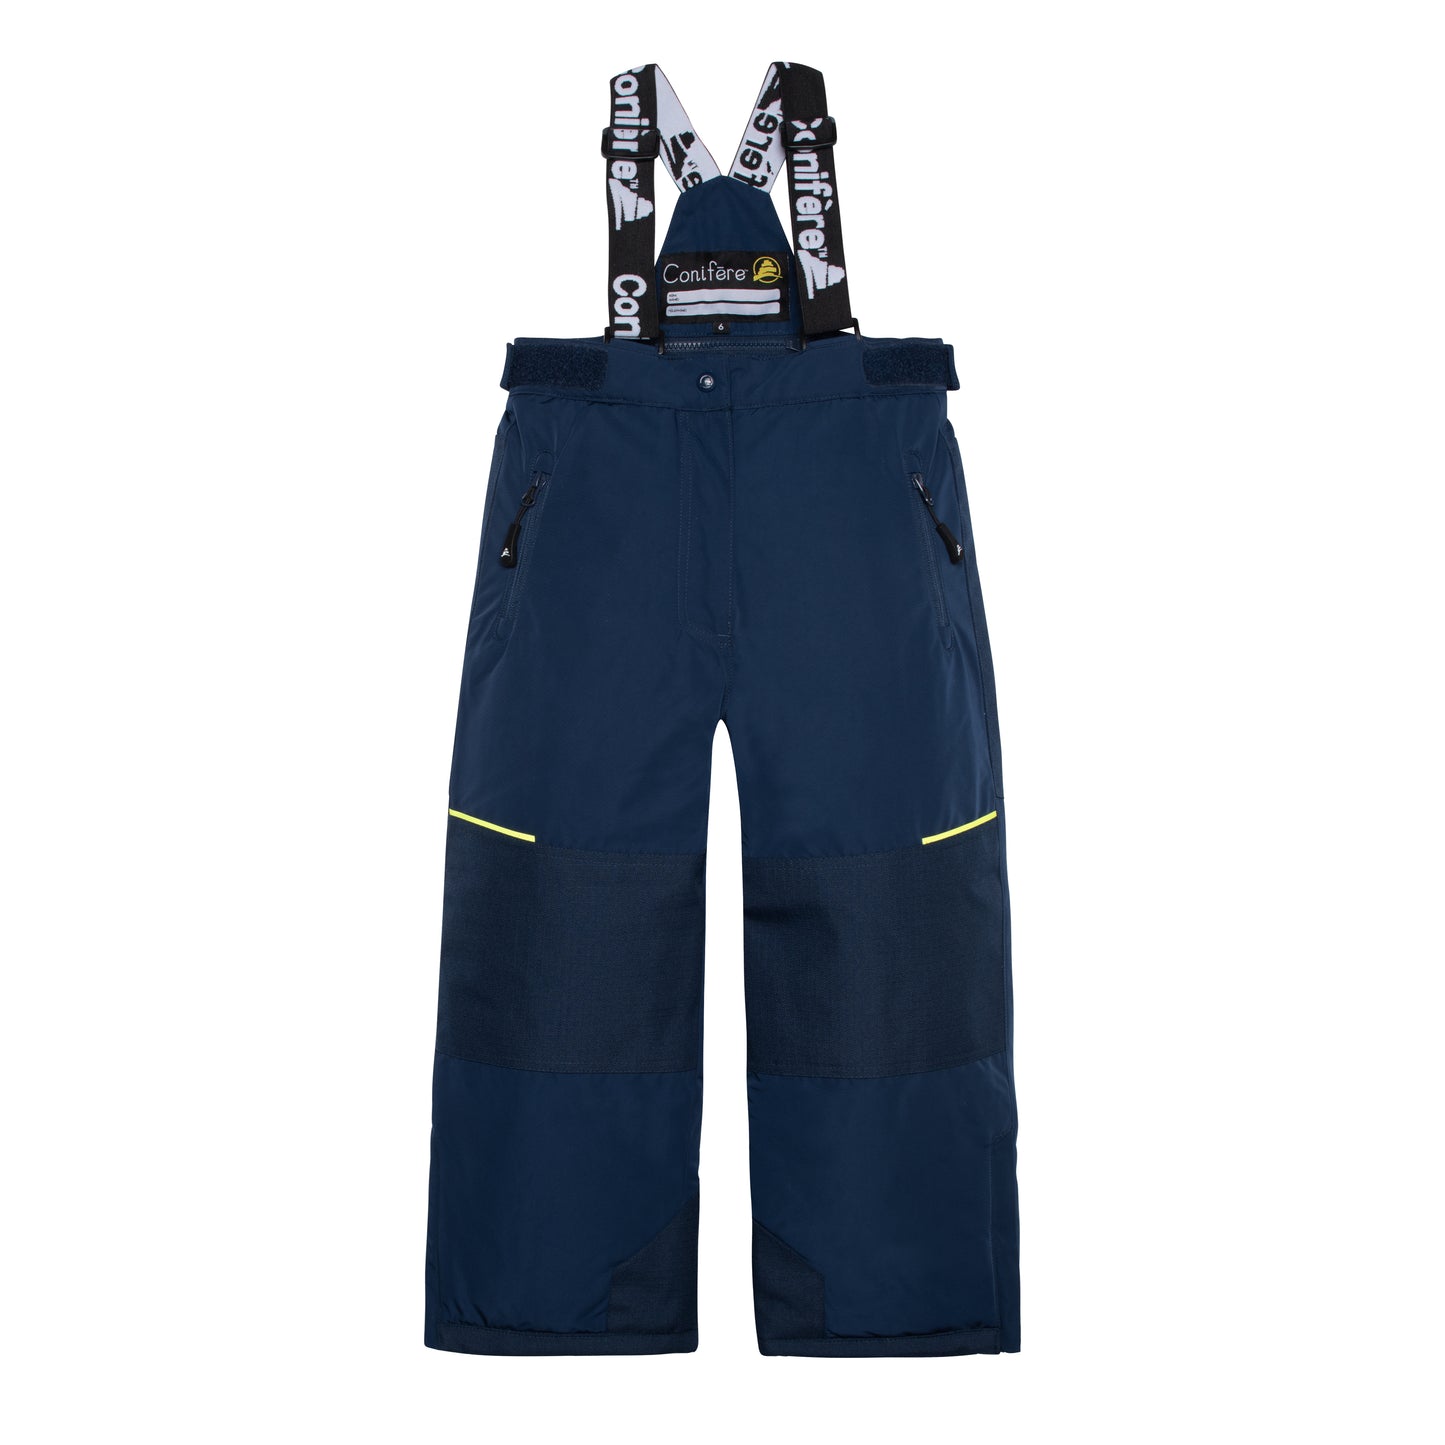 Azure Navy Boys Snowsuit Set